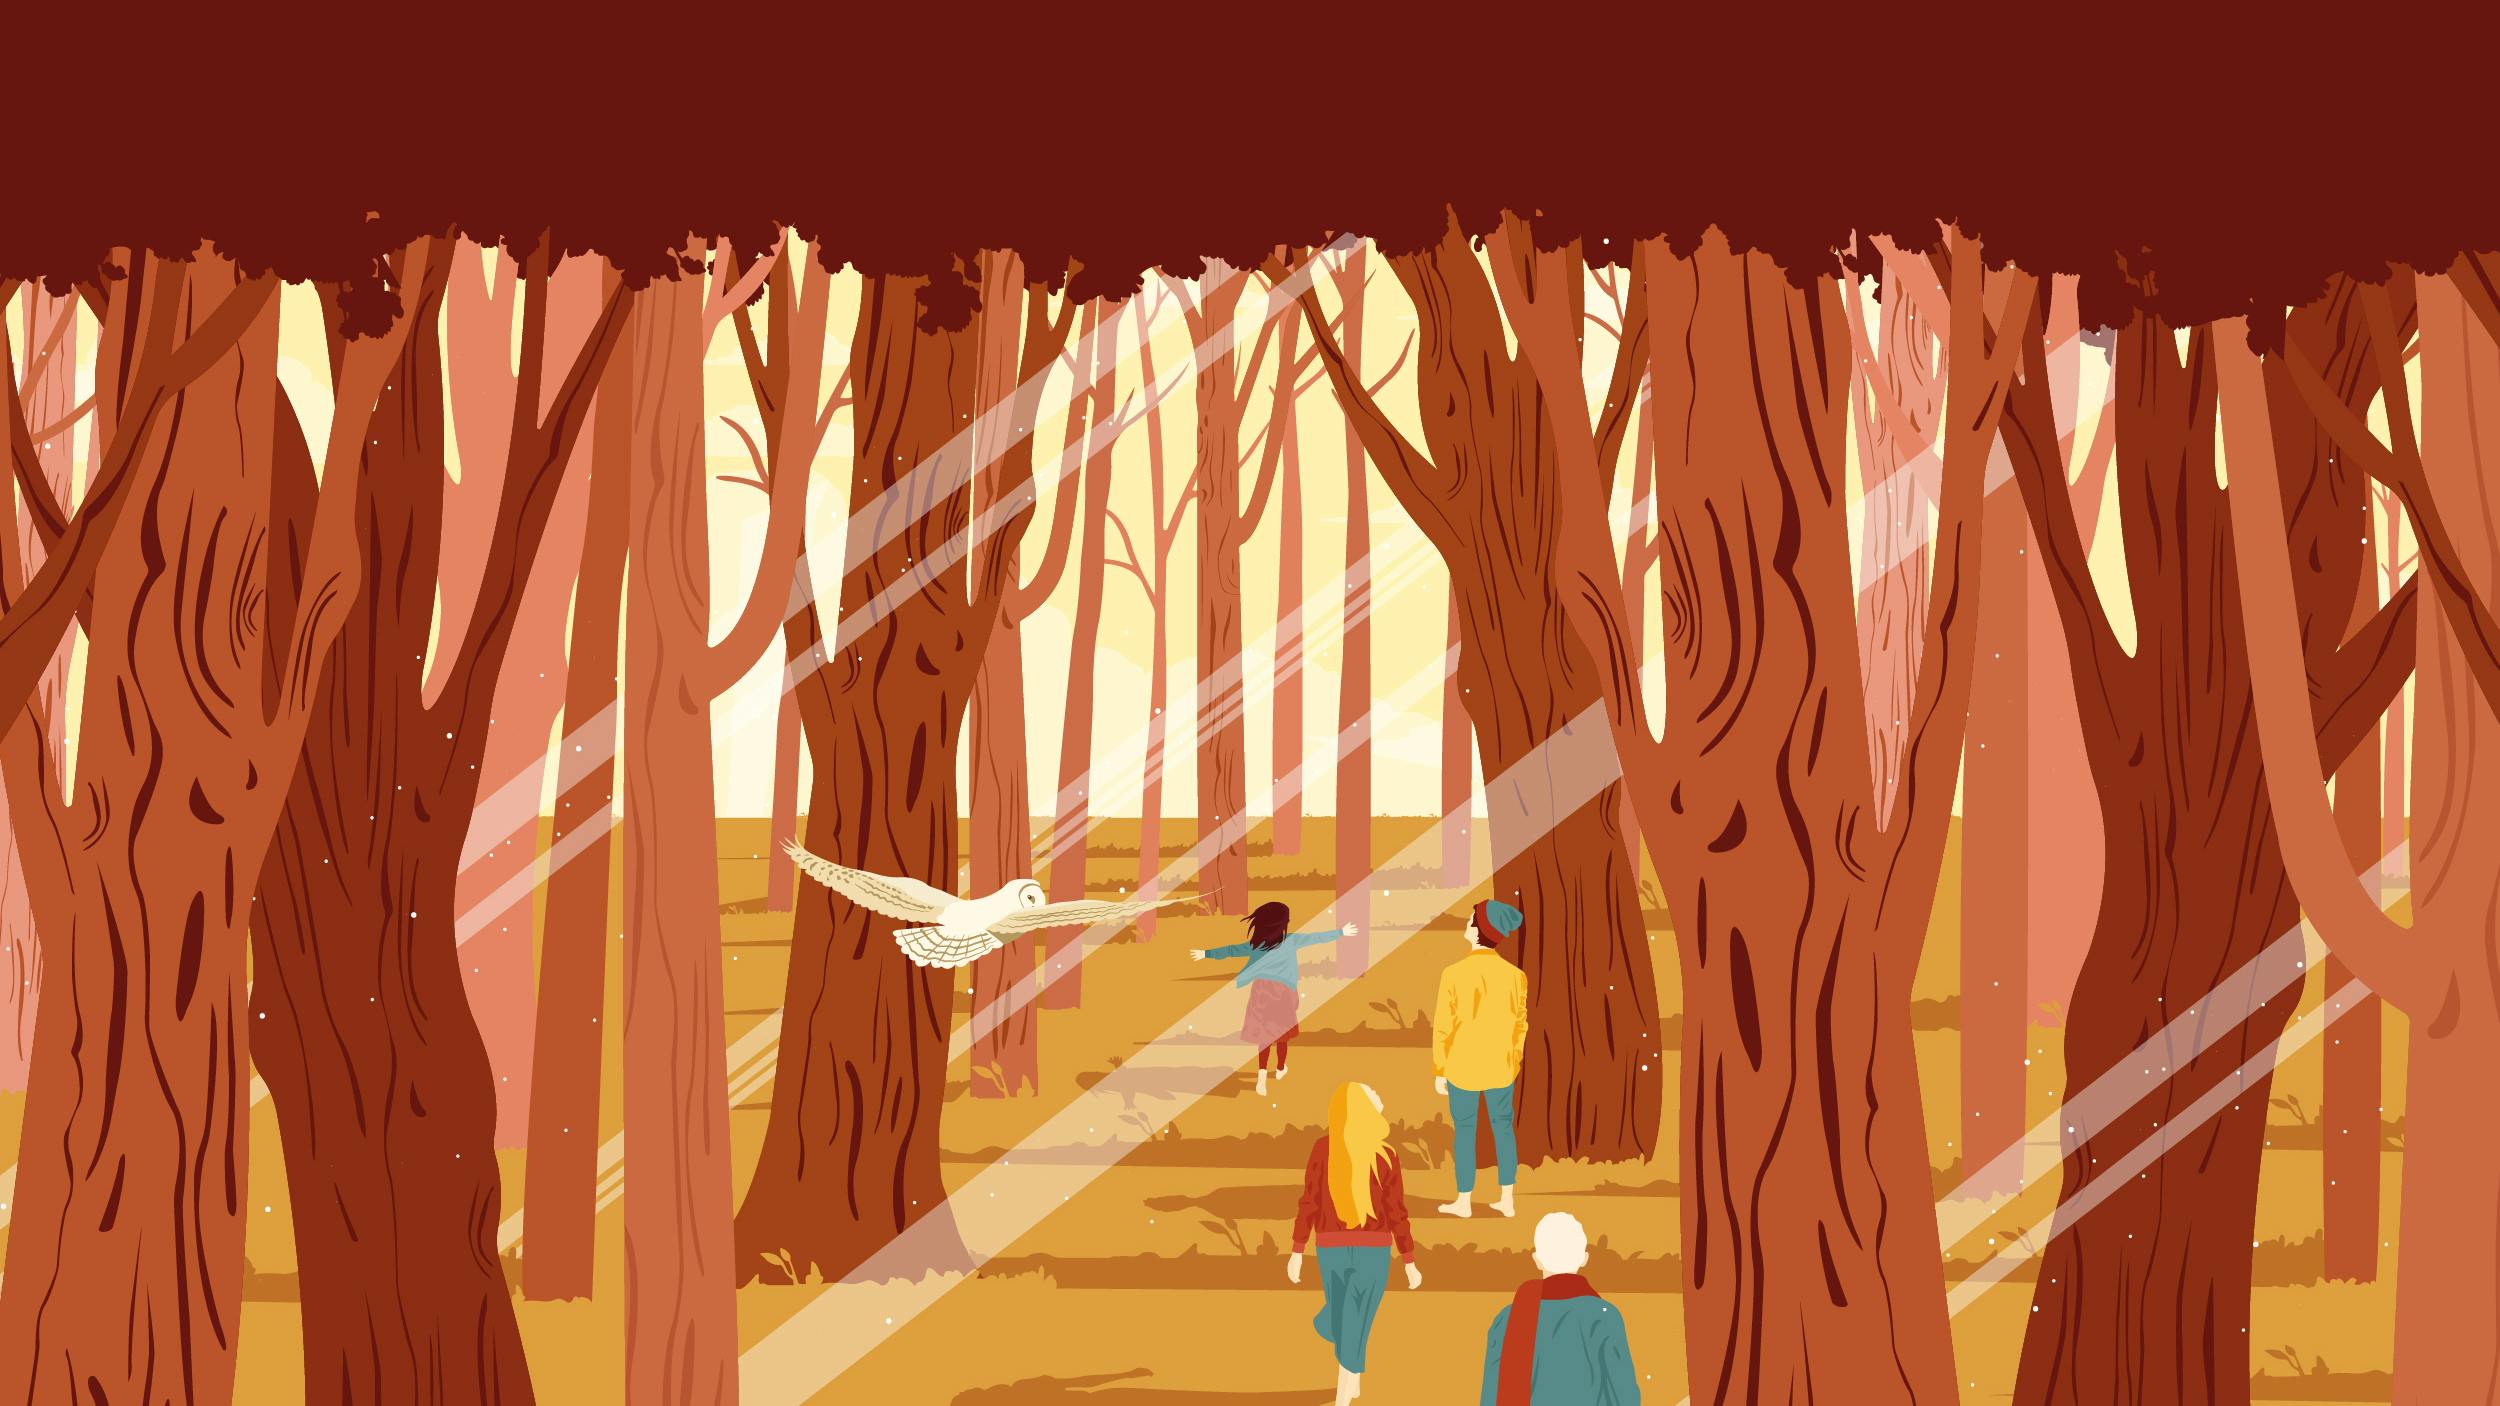 Grafica che rappresenta il bosco con persone che camminano, i colori dominanti sono arancione e rosso